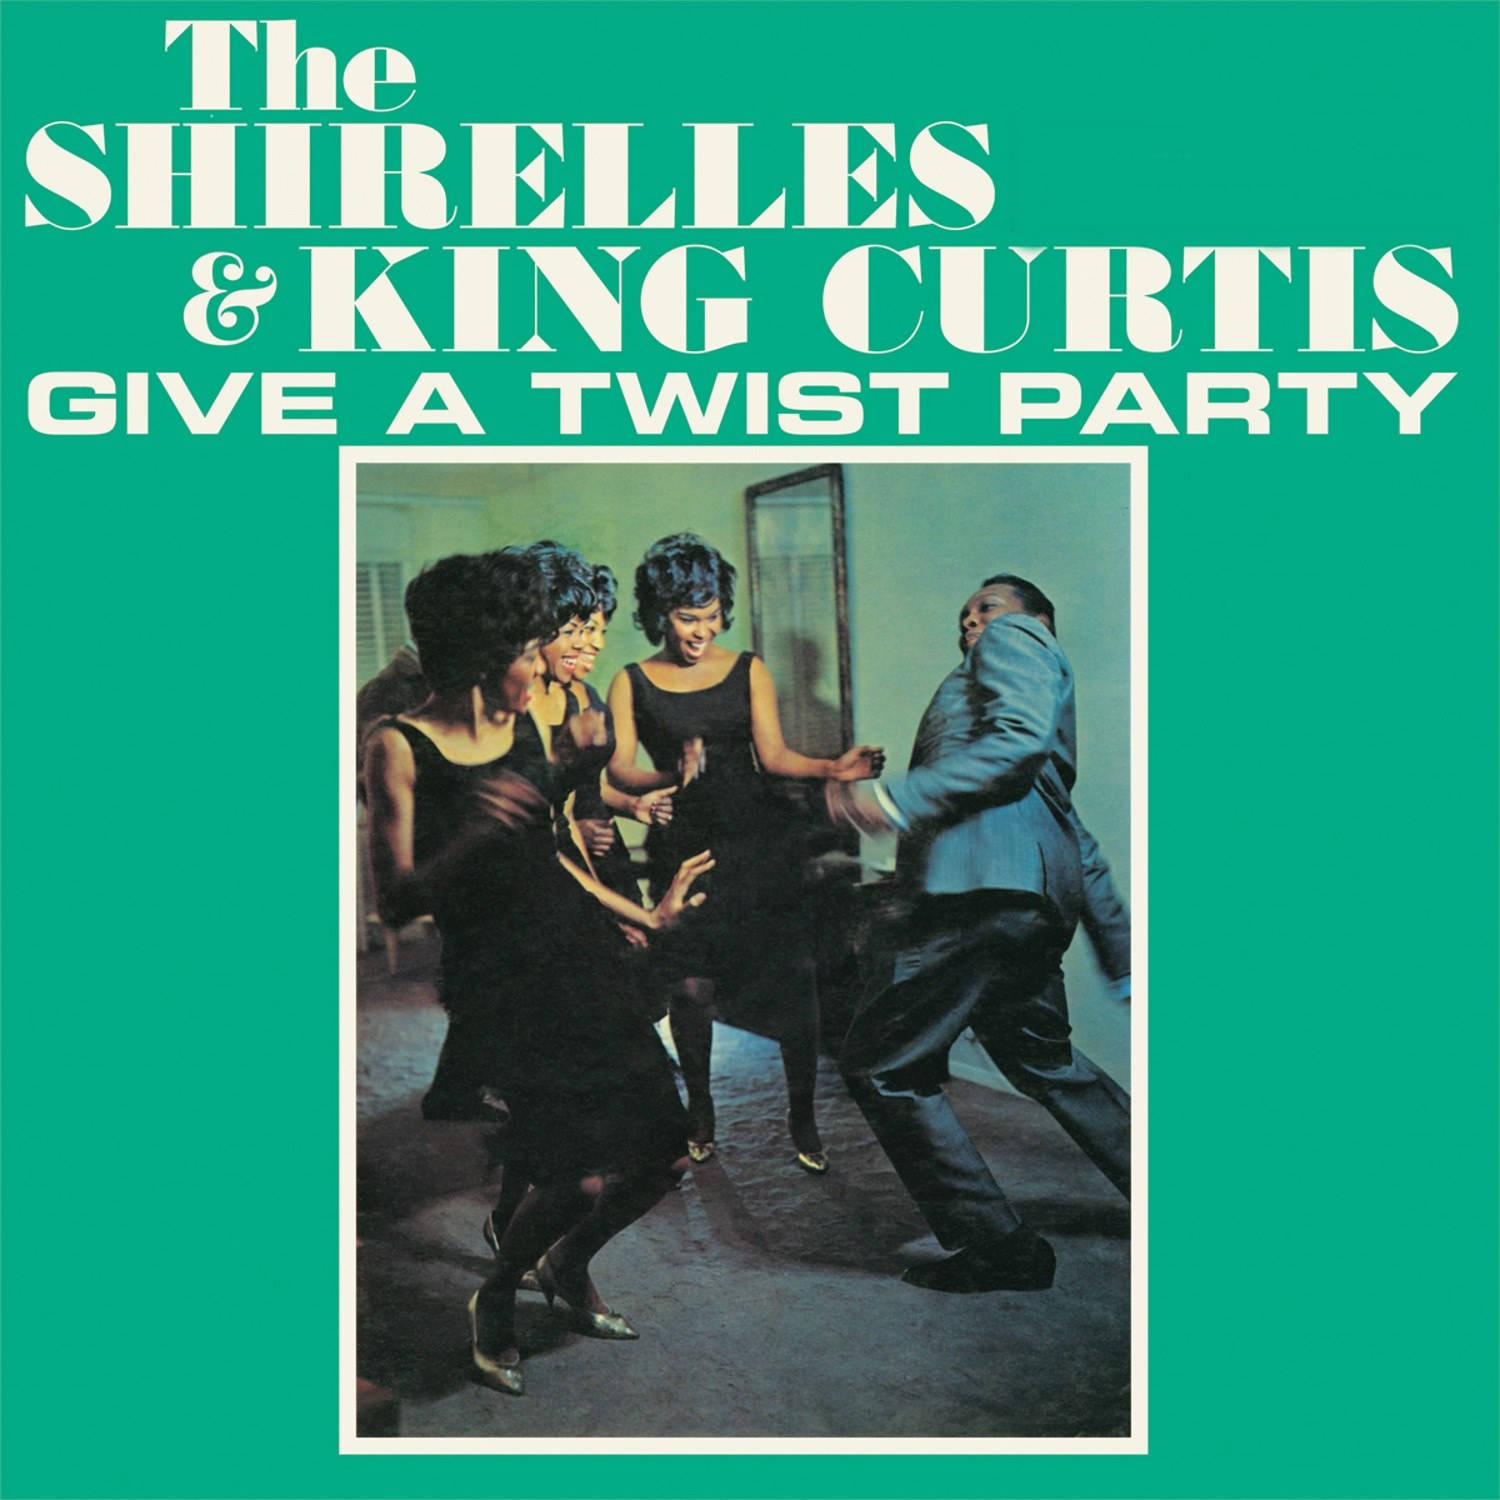 King Curtis Og The Shirelles Album Cover Wallpaper Wallpaper